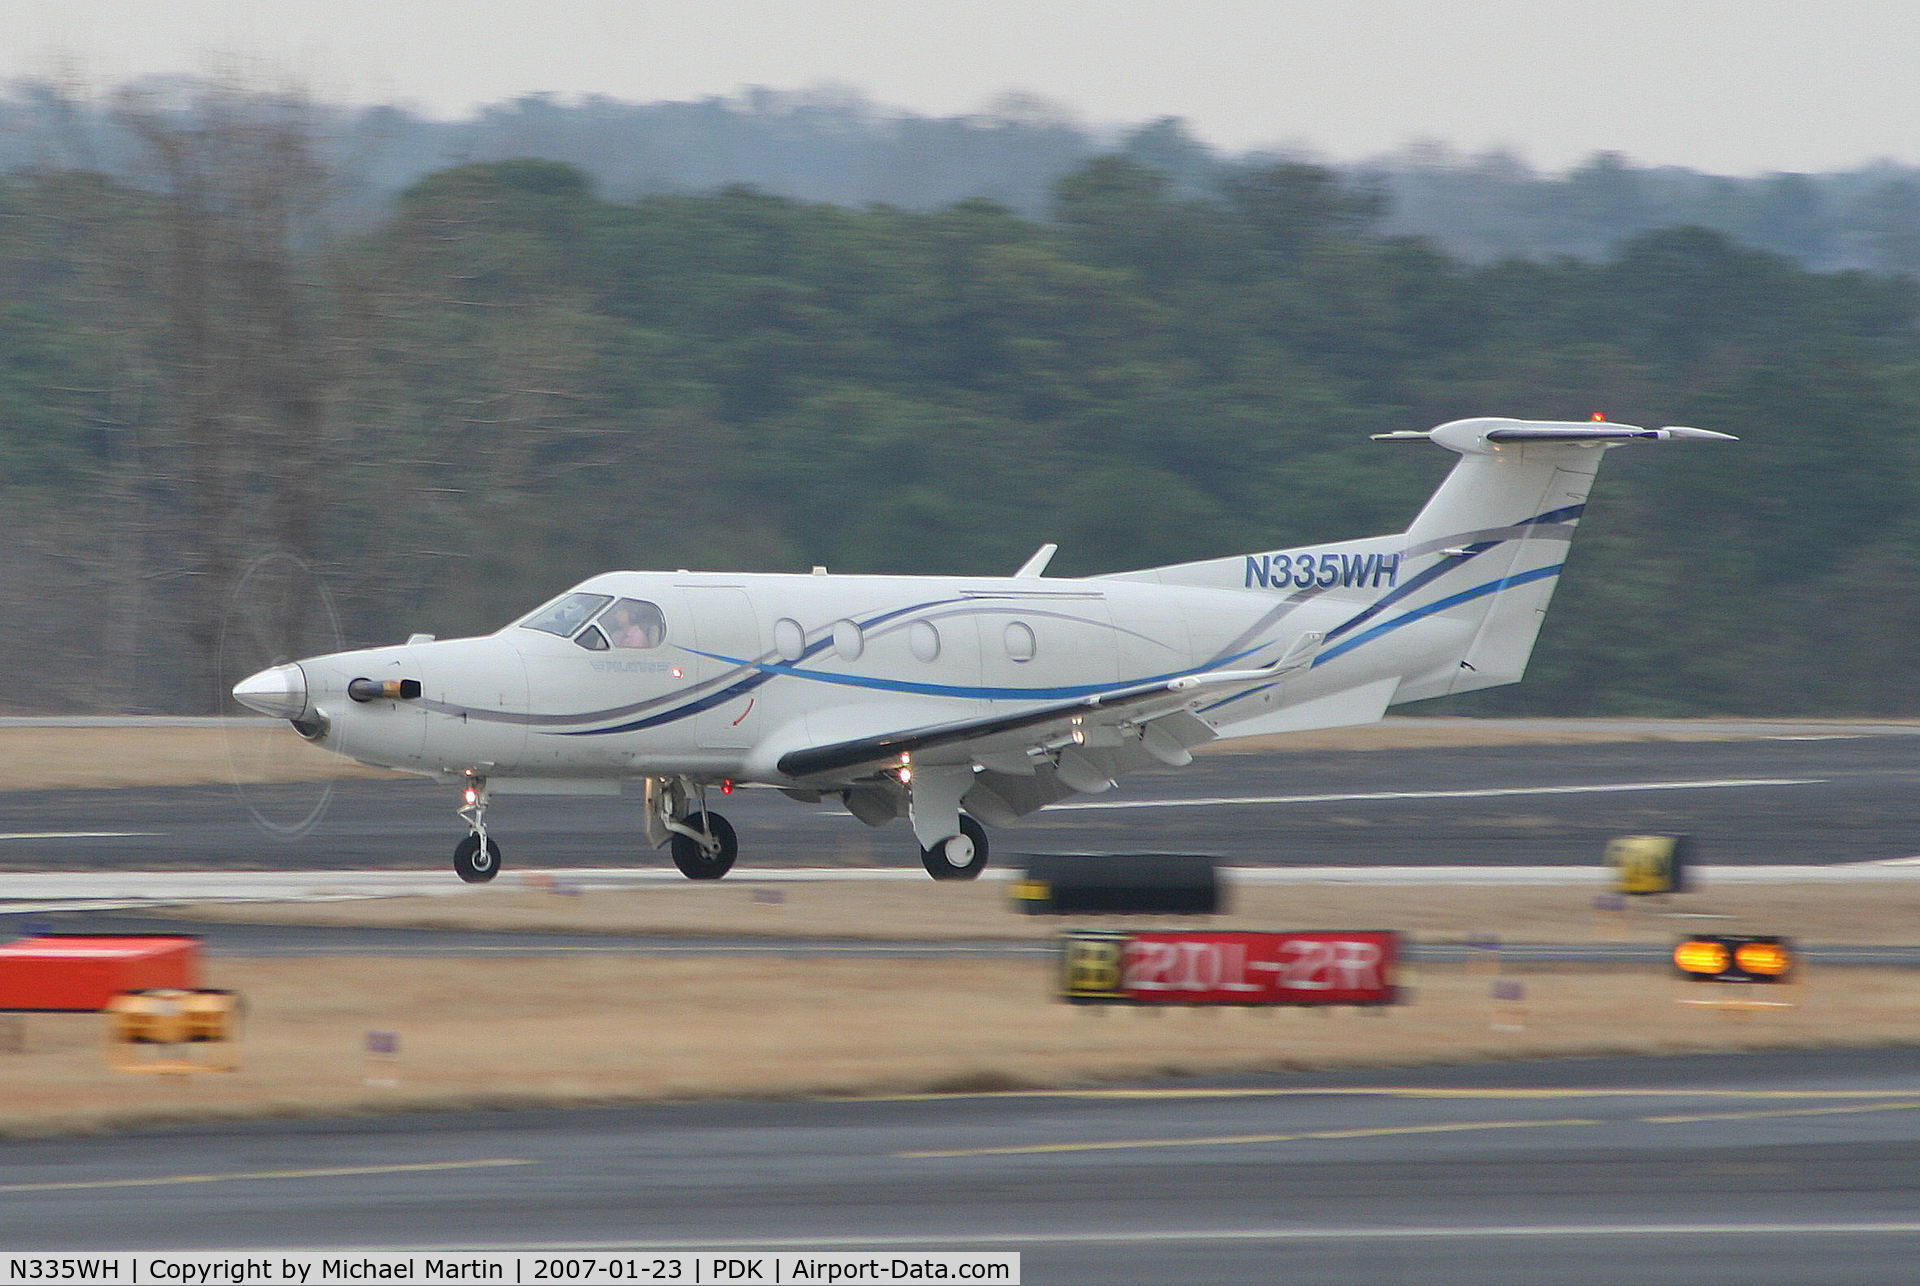 N335WH, 2000 Pilatus PC-12/45 C/N 335, Landing Runway 2R